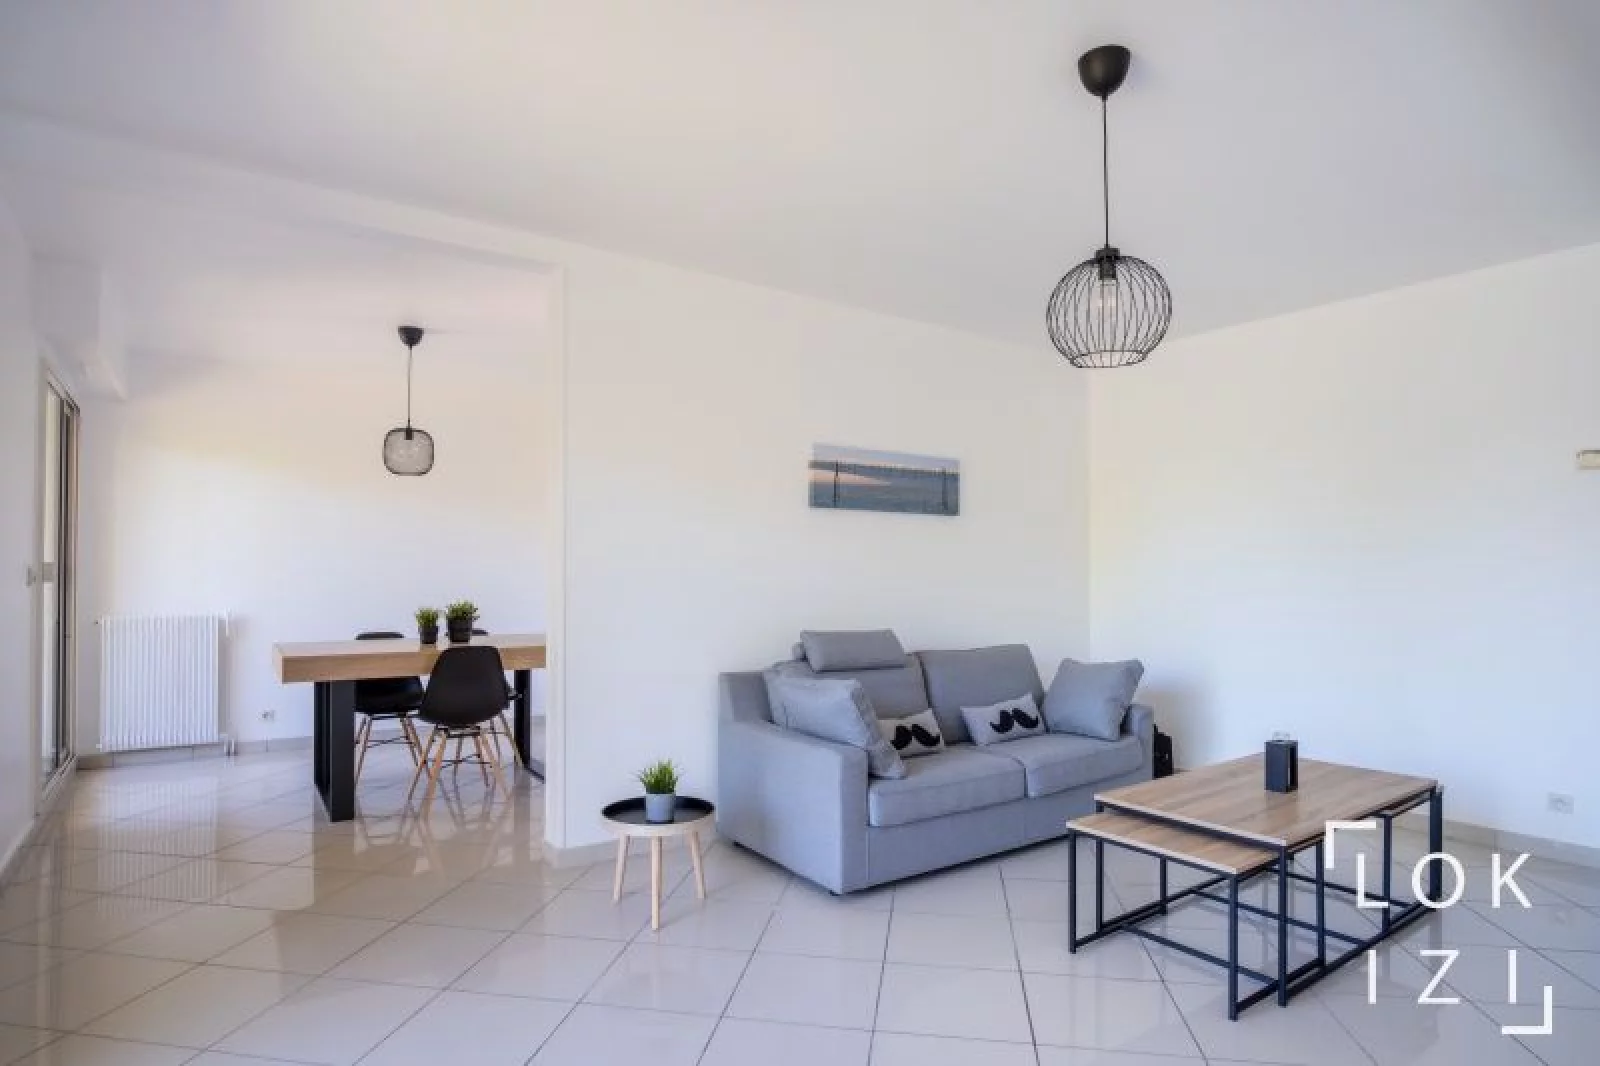 Location appartement meublé 3 pièces 88m² (Bordeaux - Mérignac)